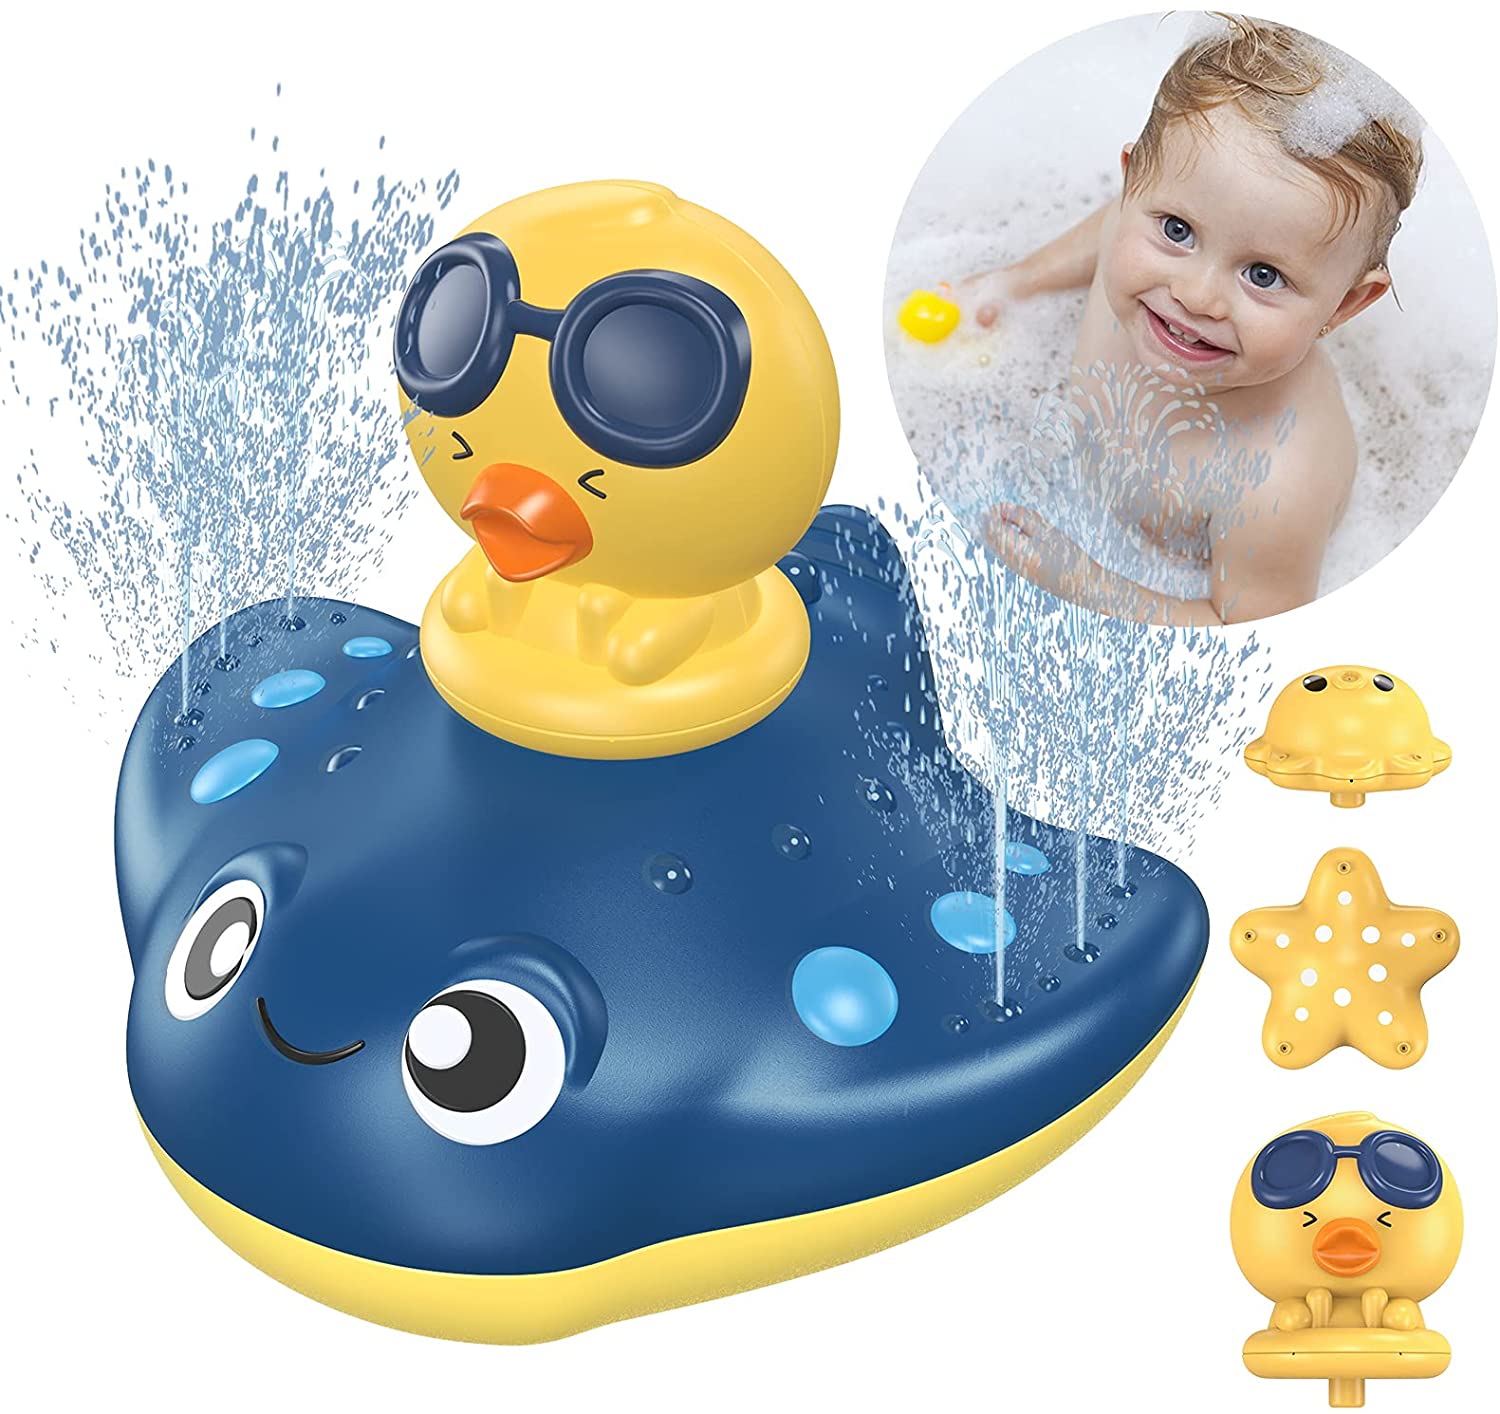 3x Spaß Bad Spielzeug Dusche Spray Wasser Wasserrad Badewanne für Badezim R3J6 